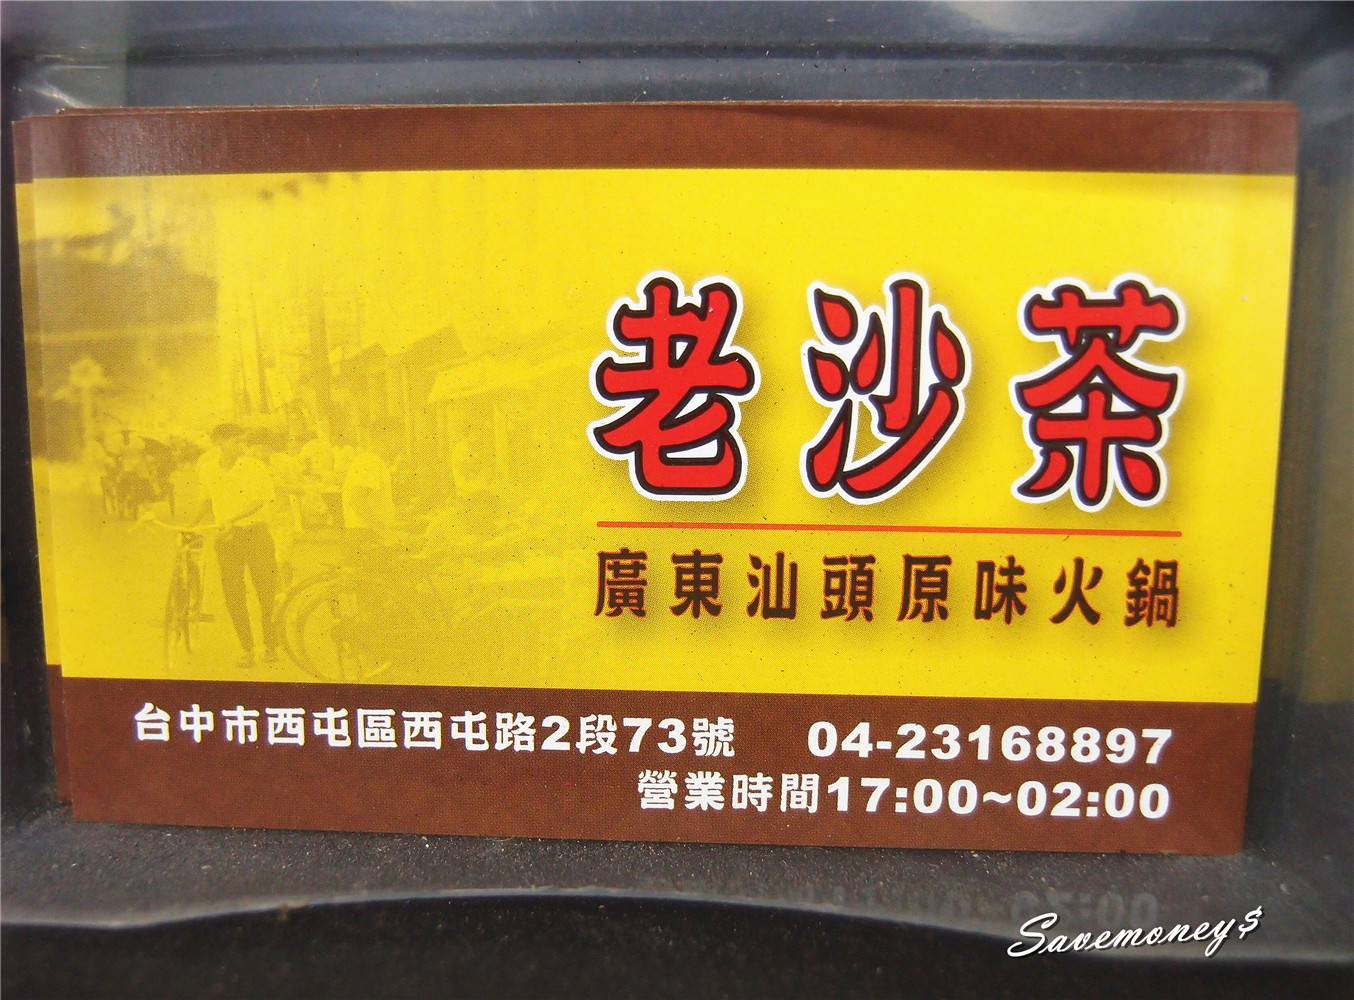 【台中西屯美食】老沙茶廣東汕頭原味火鍋,真材實料的味覺感動